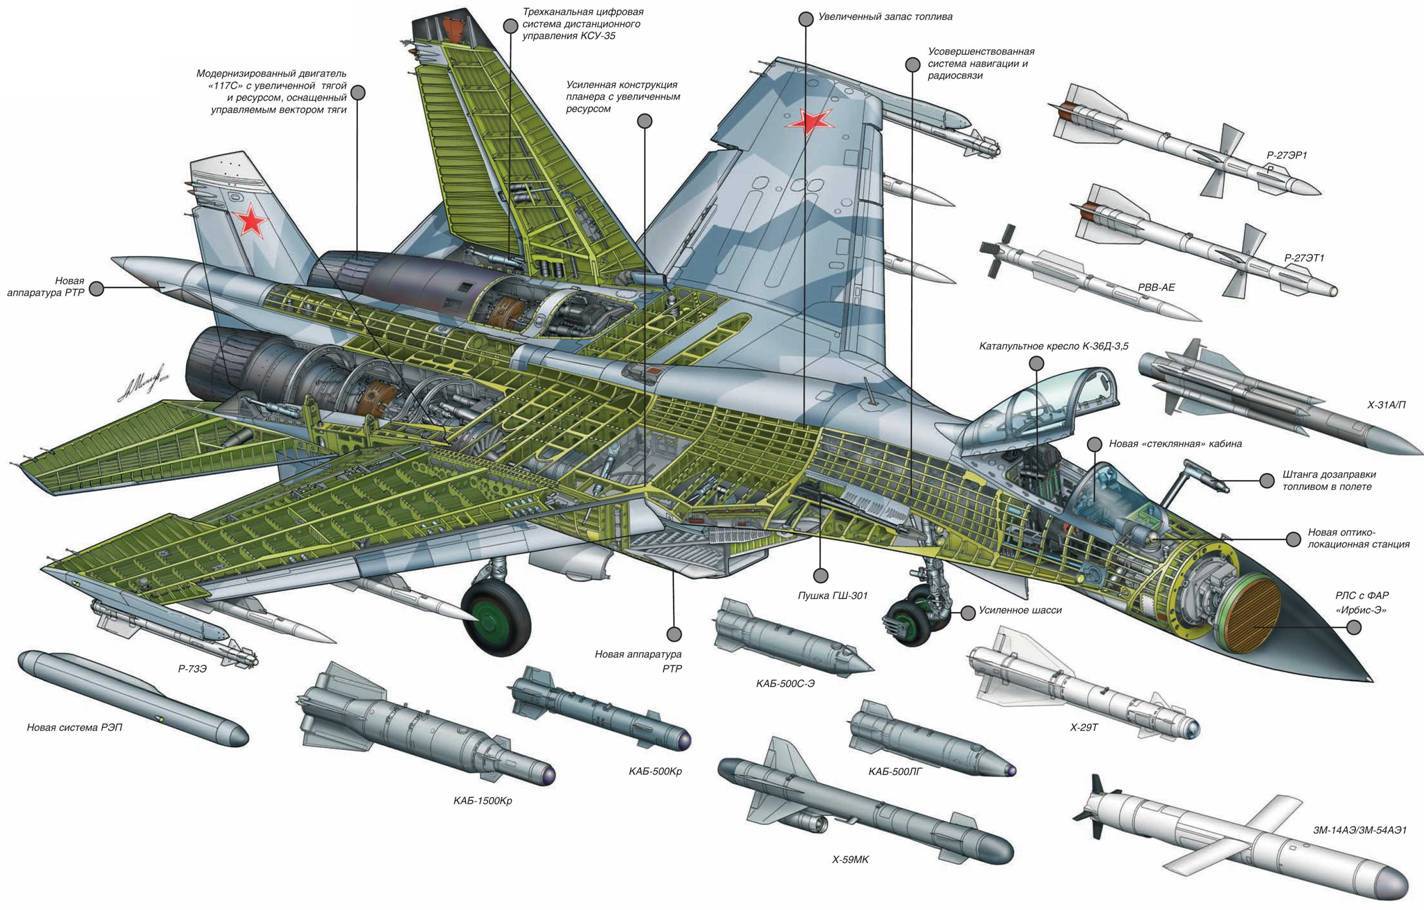 Combatavia - все о военной авиации россии.многофункциональный истребитель су-37, описание, тактико-технические характеристики, вооружение, модификации боевого самолета су-37